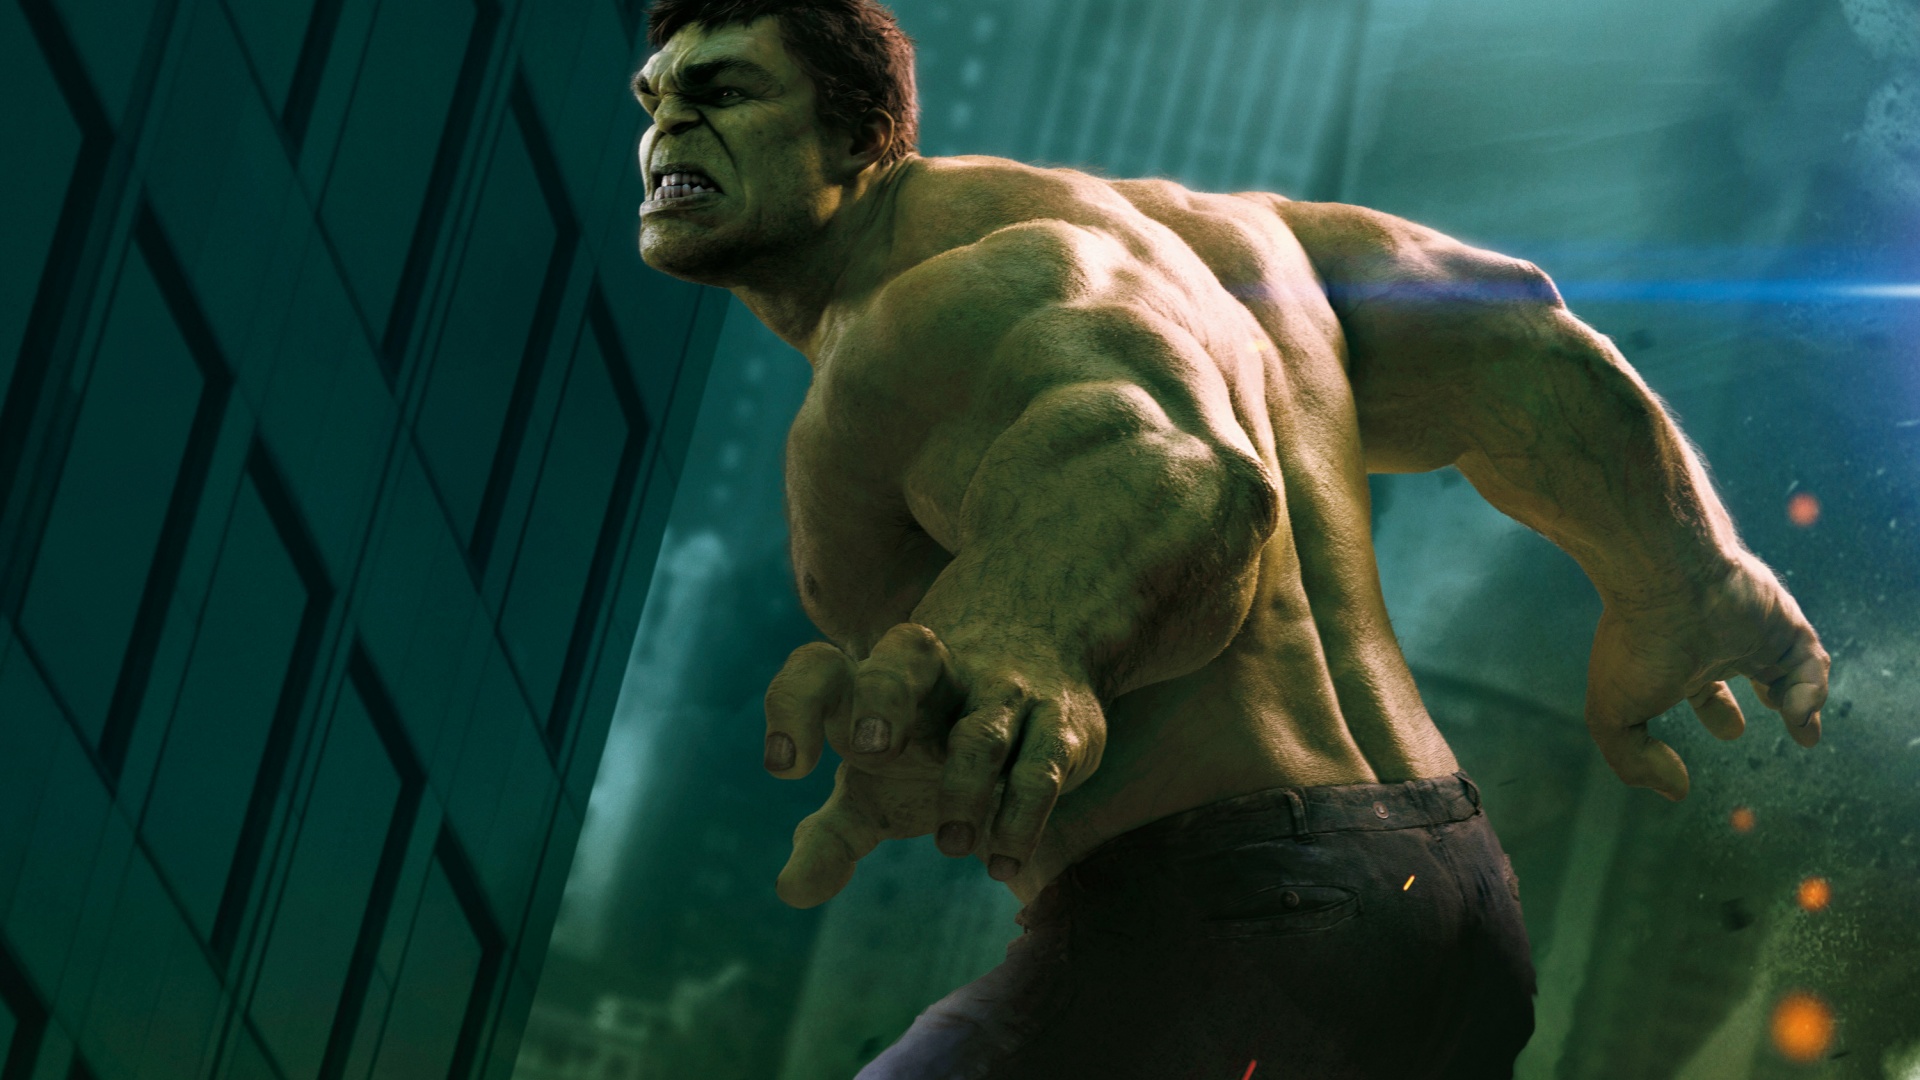 Hulk In The Avengers